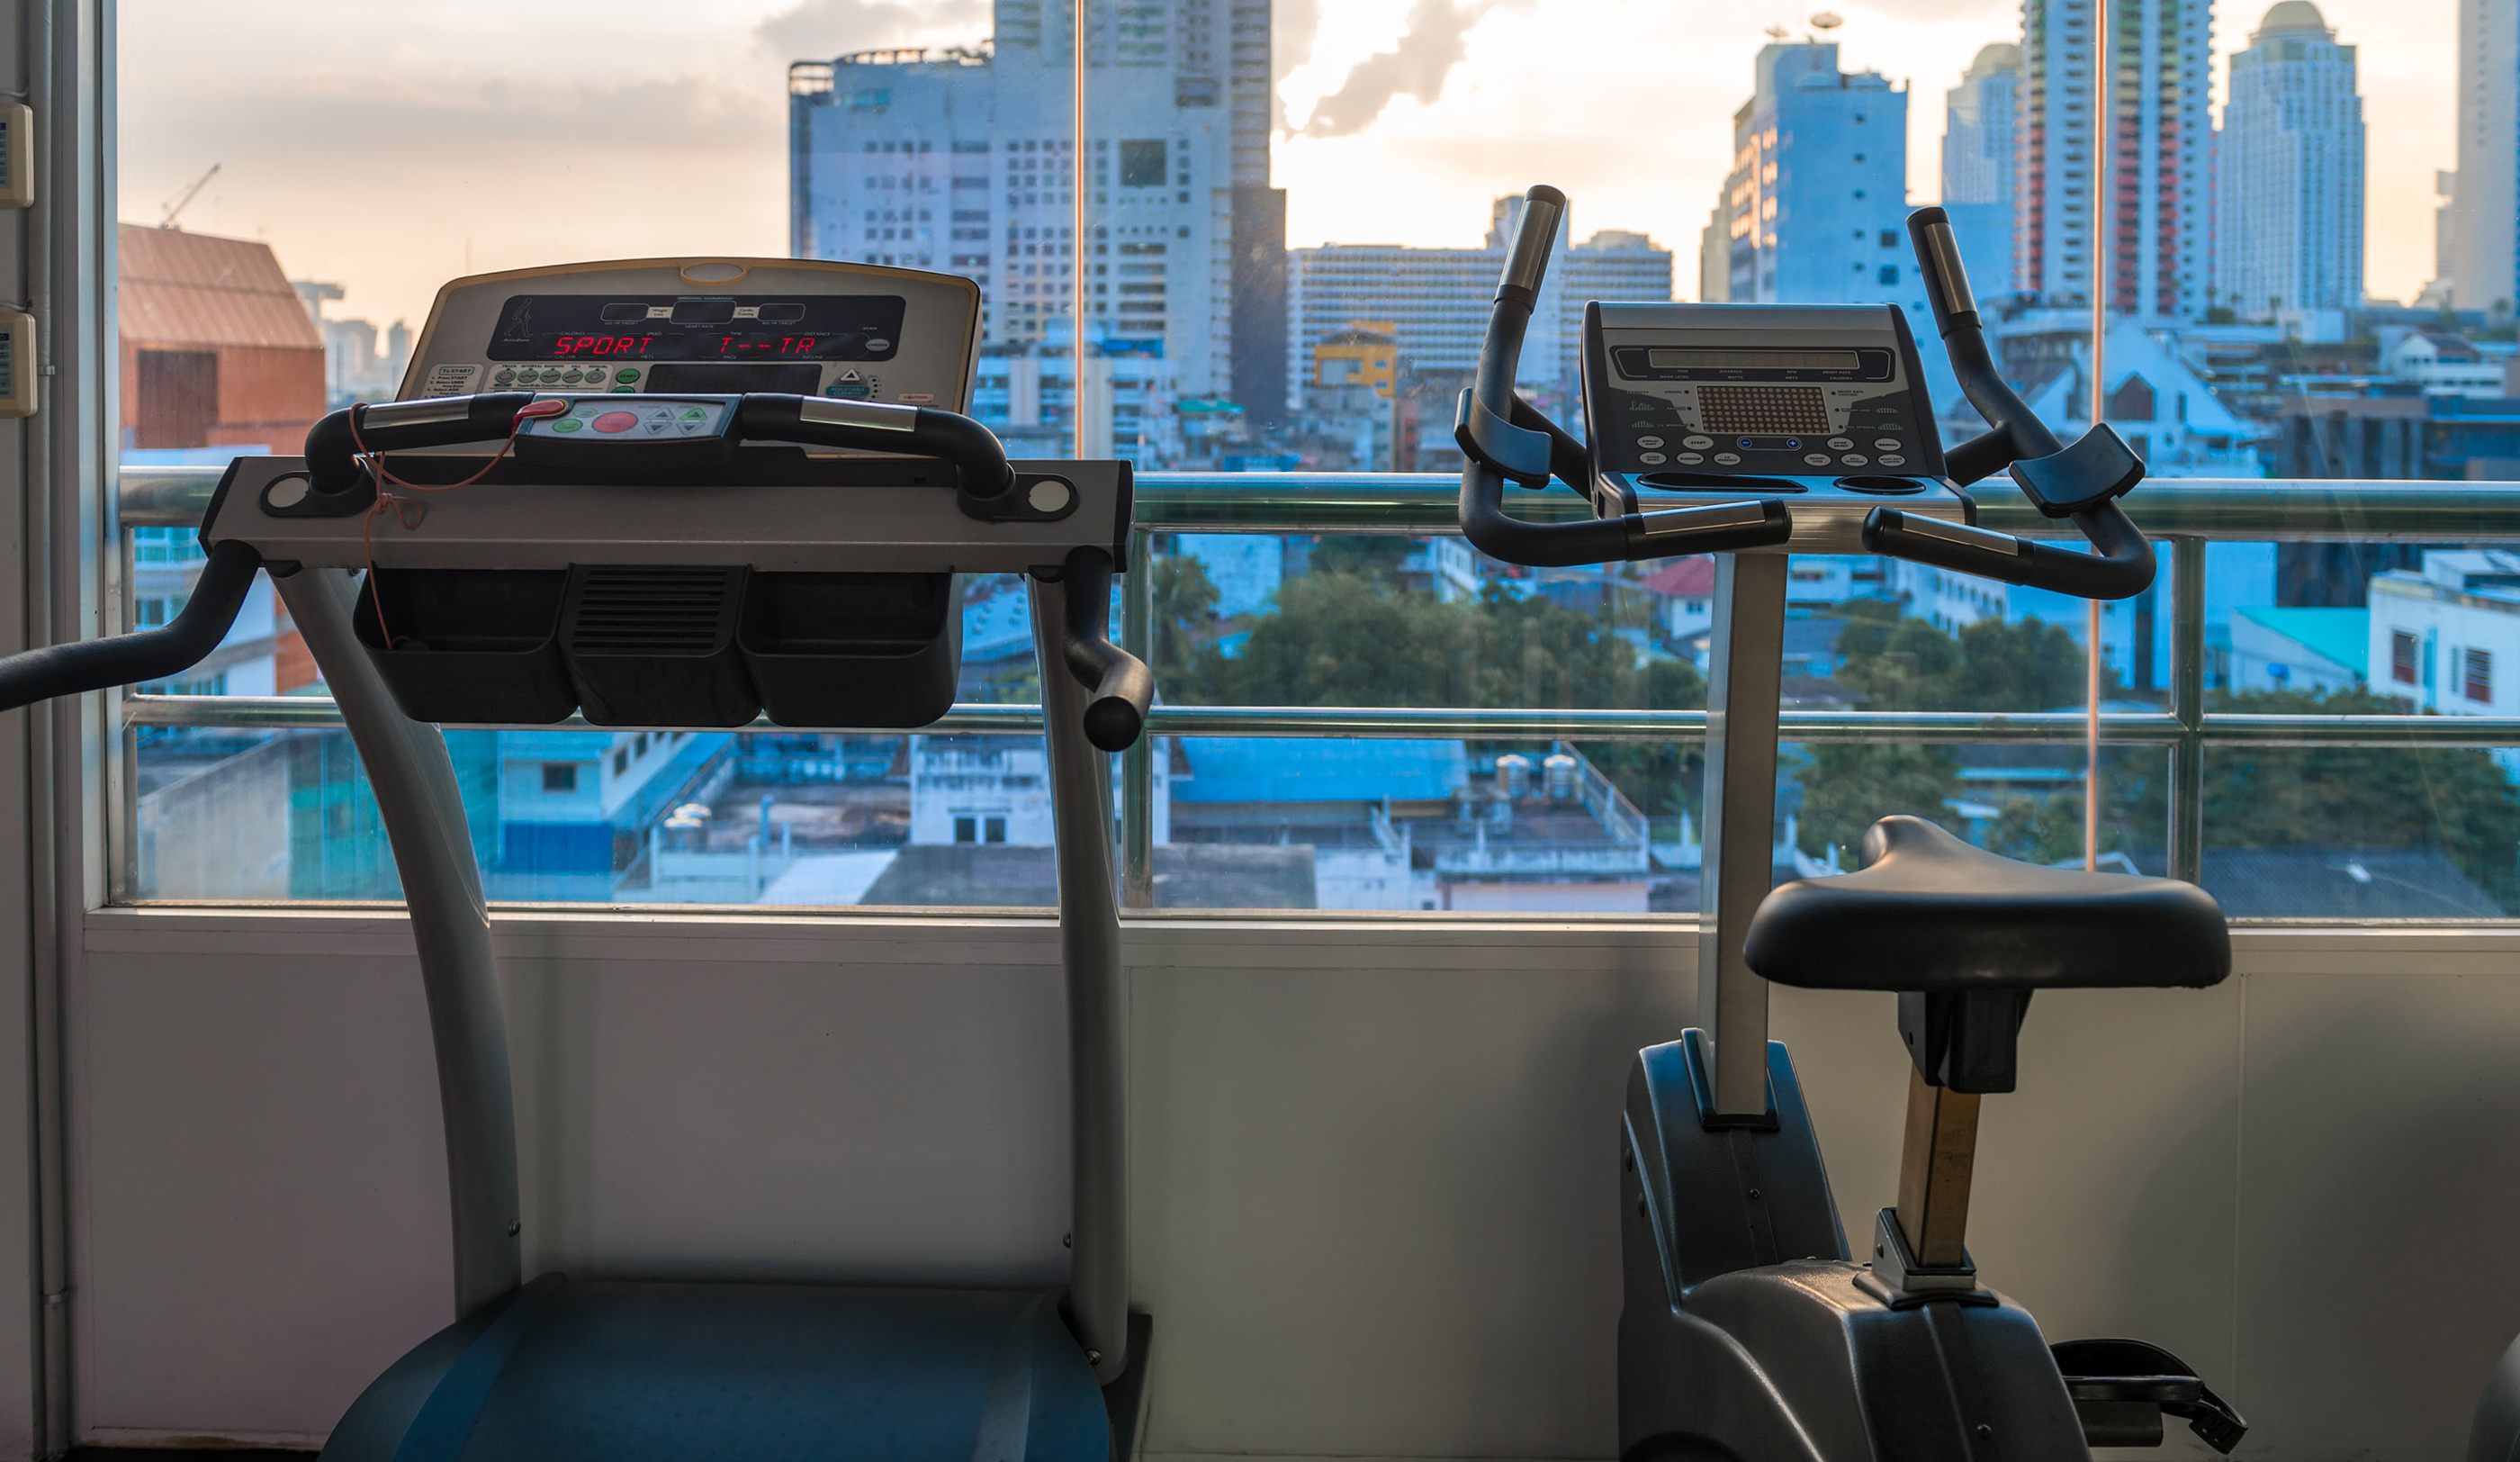 Treadmill overlooking the city